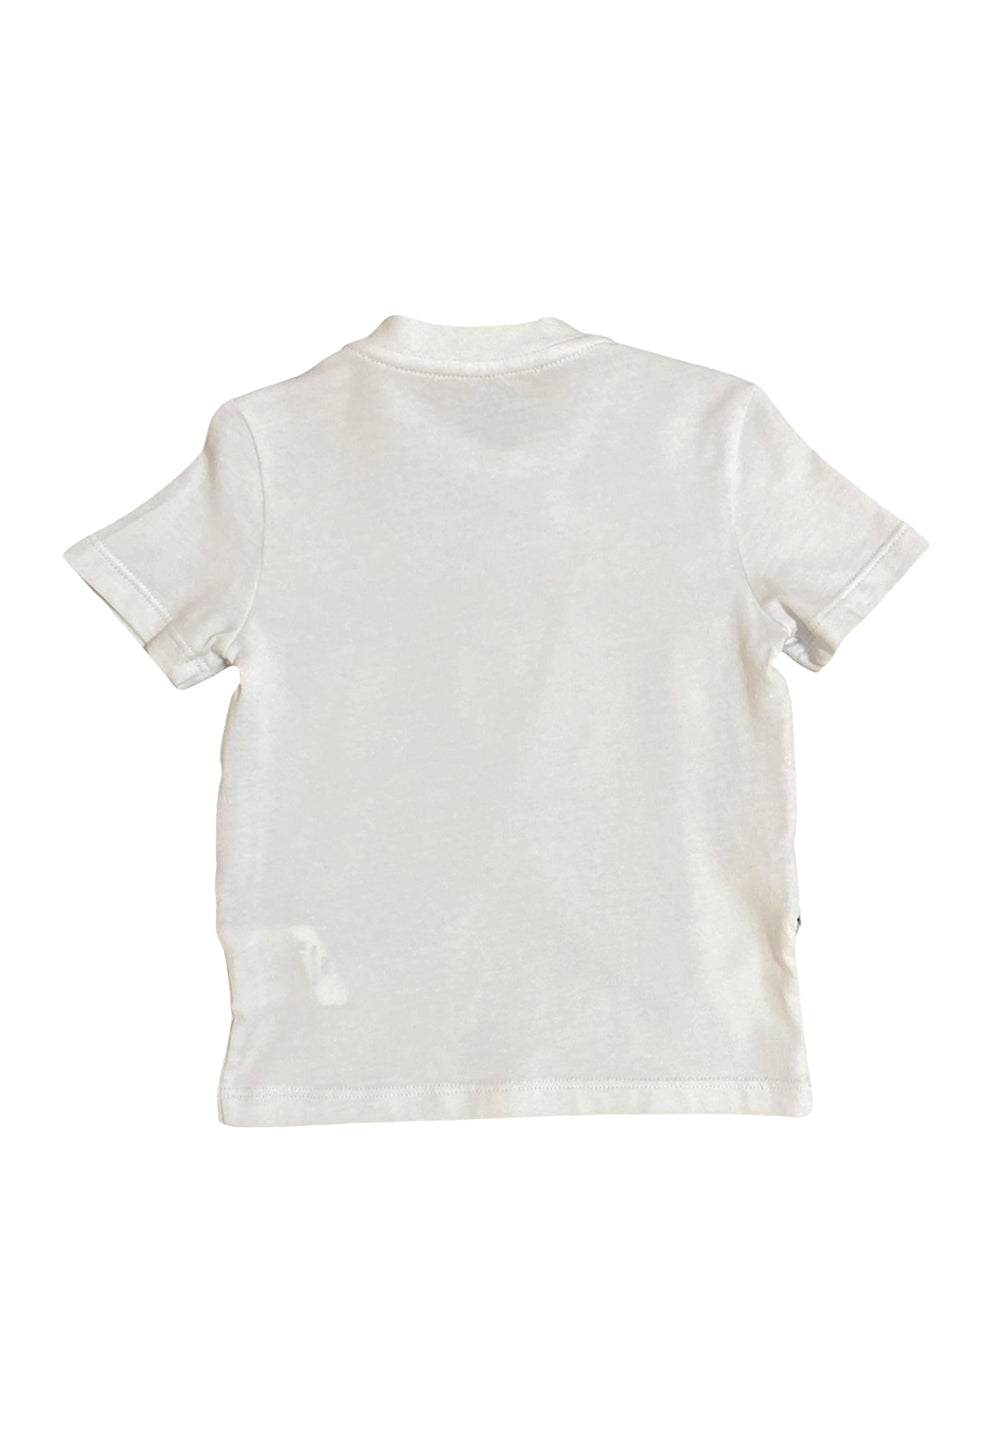 T-shirt bianco-turchese per bambino - Primamoda kids